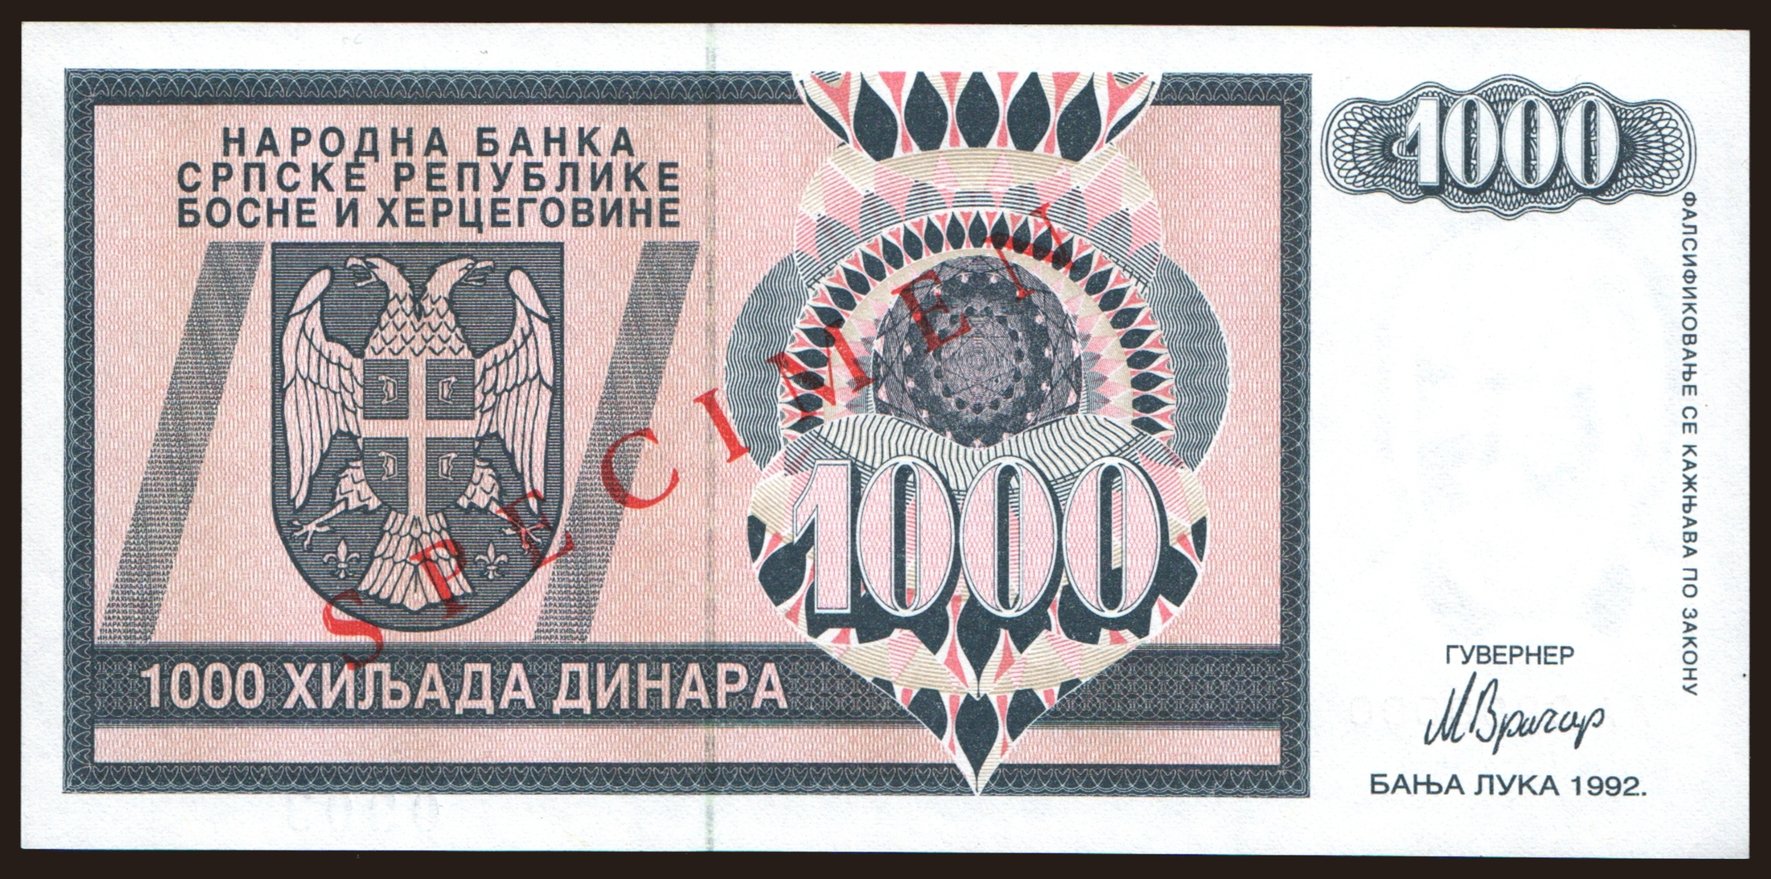 RSBH, 1000 dinara, 1992, SPECIMEN